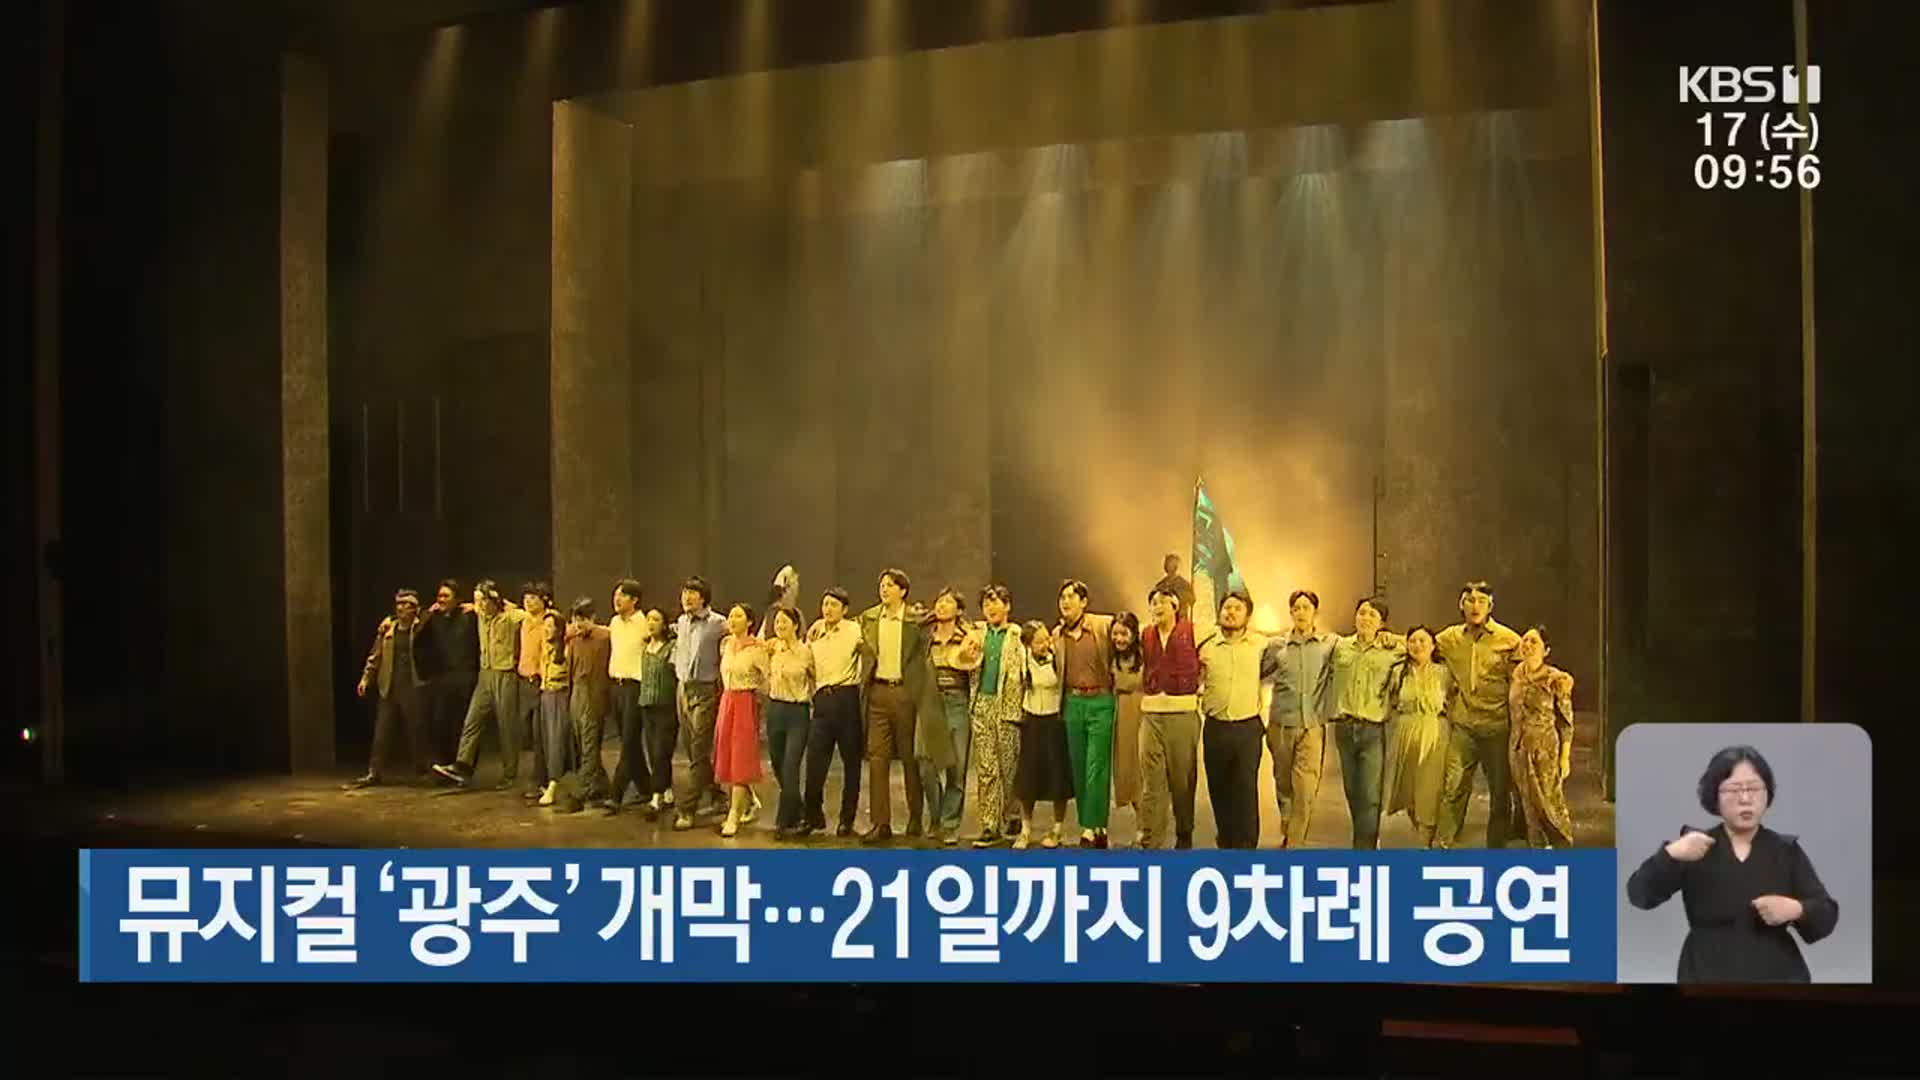 뮤지컬 ‘광주’ 개막…21일까지 9차례 공연